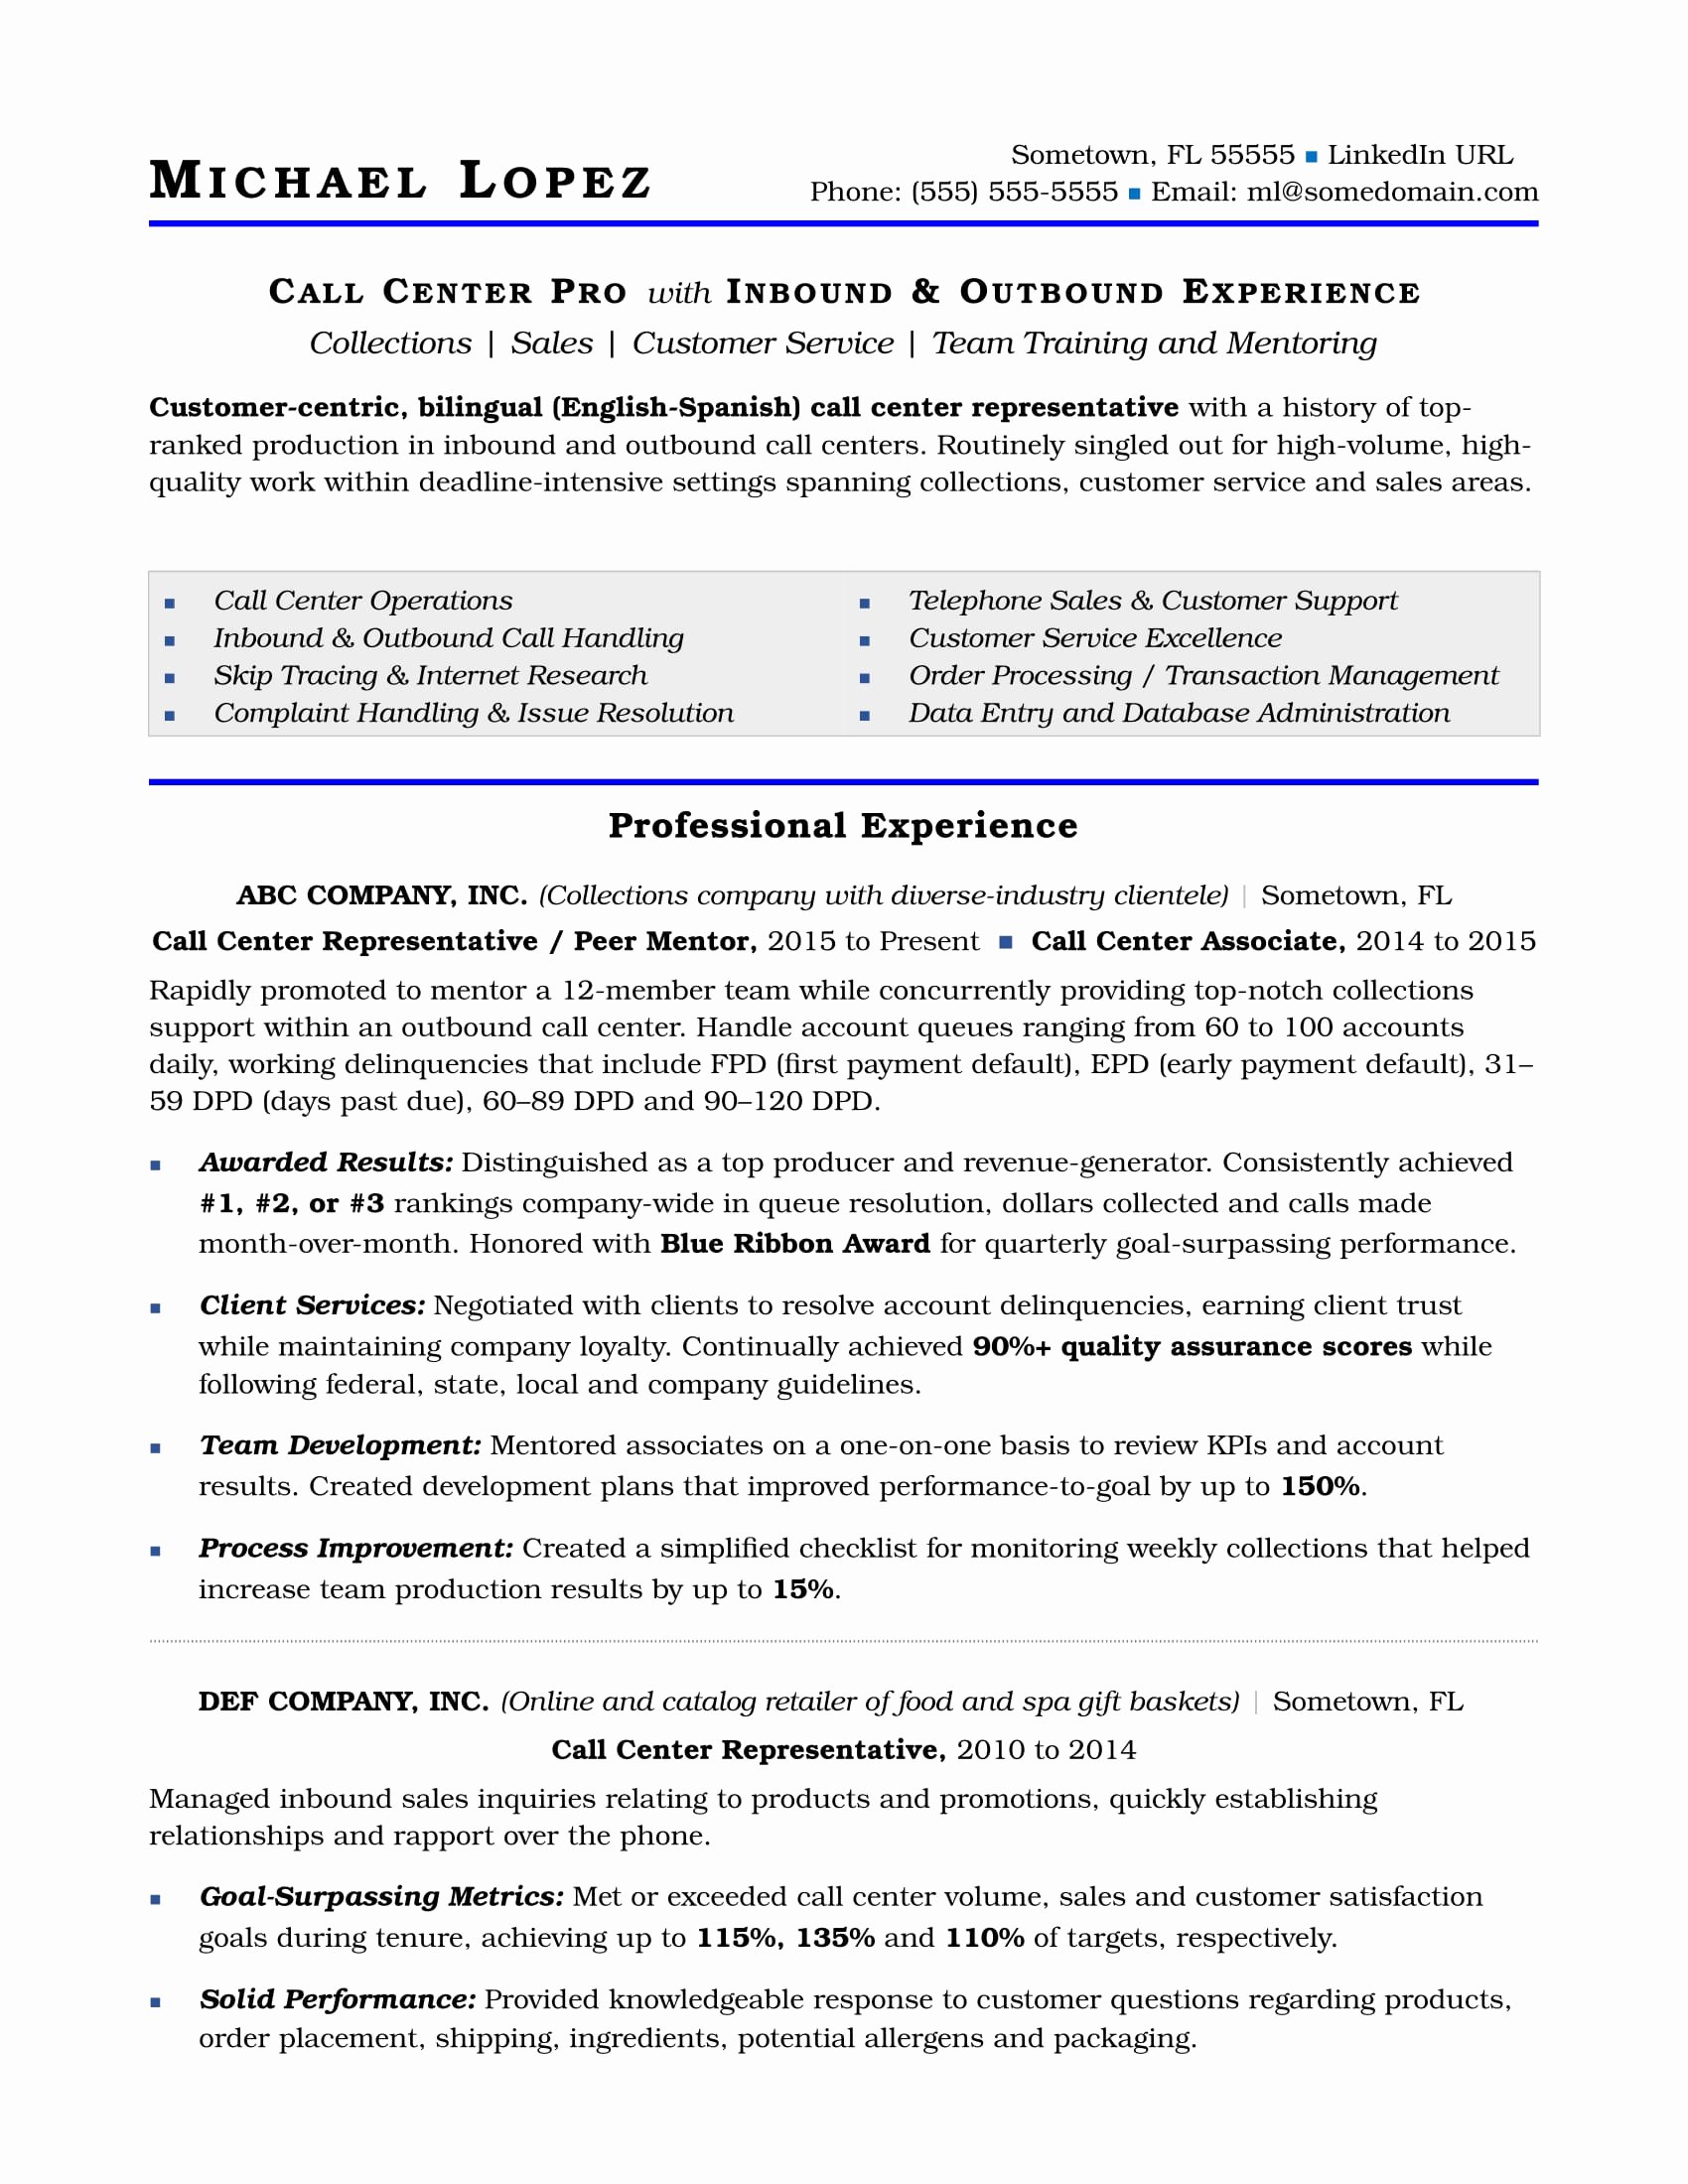 Call Center Resume Sample